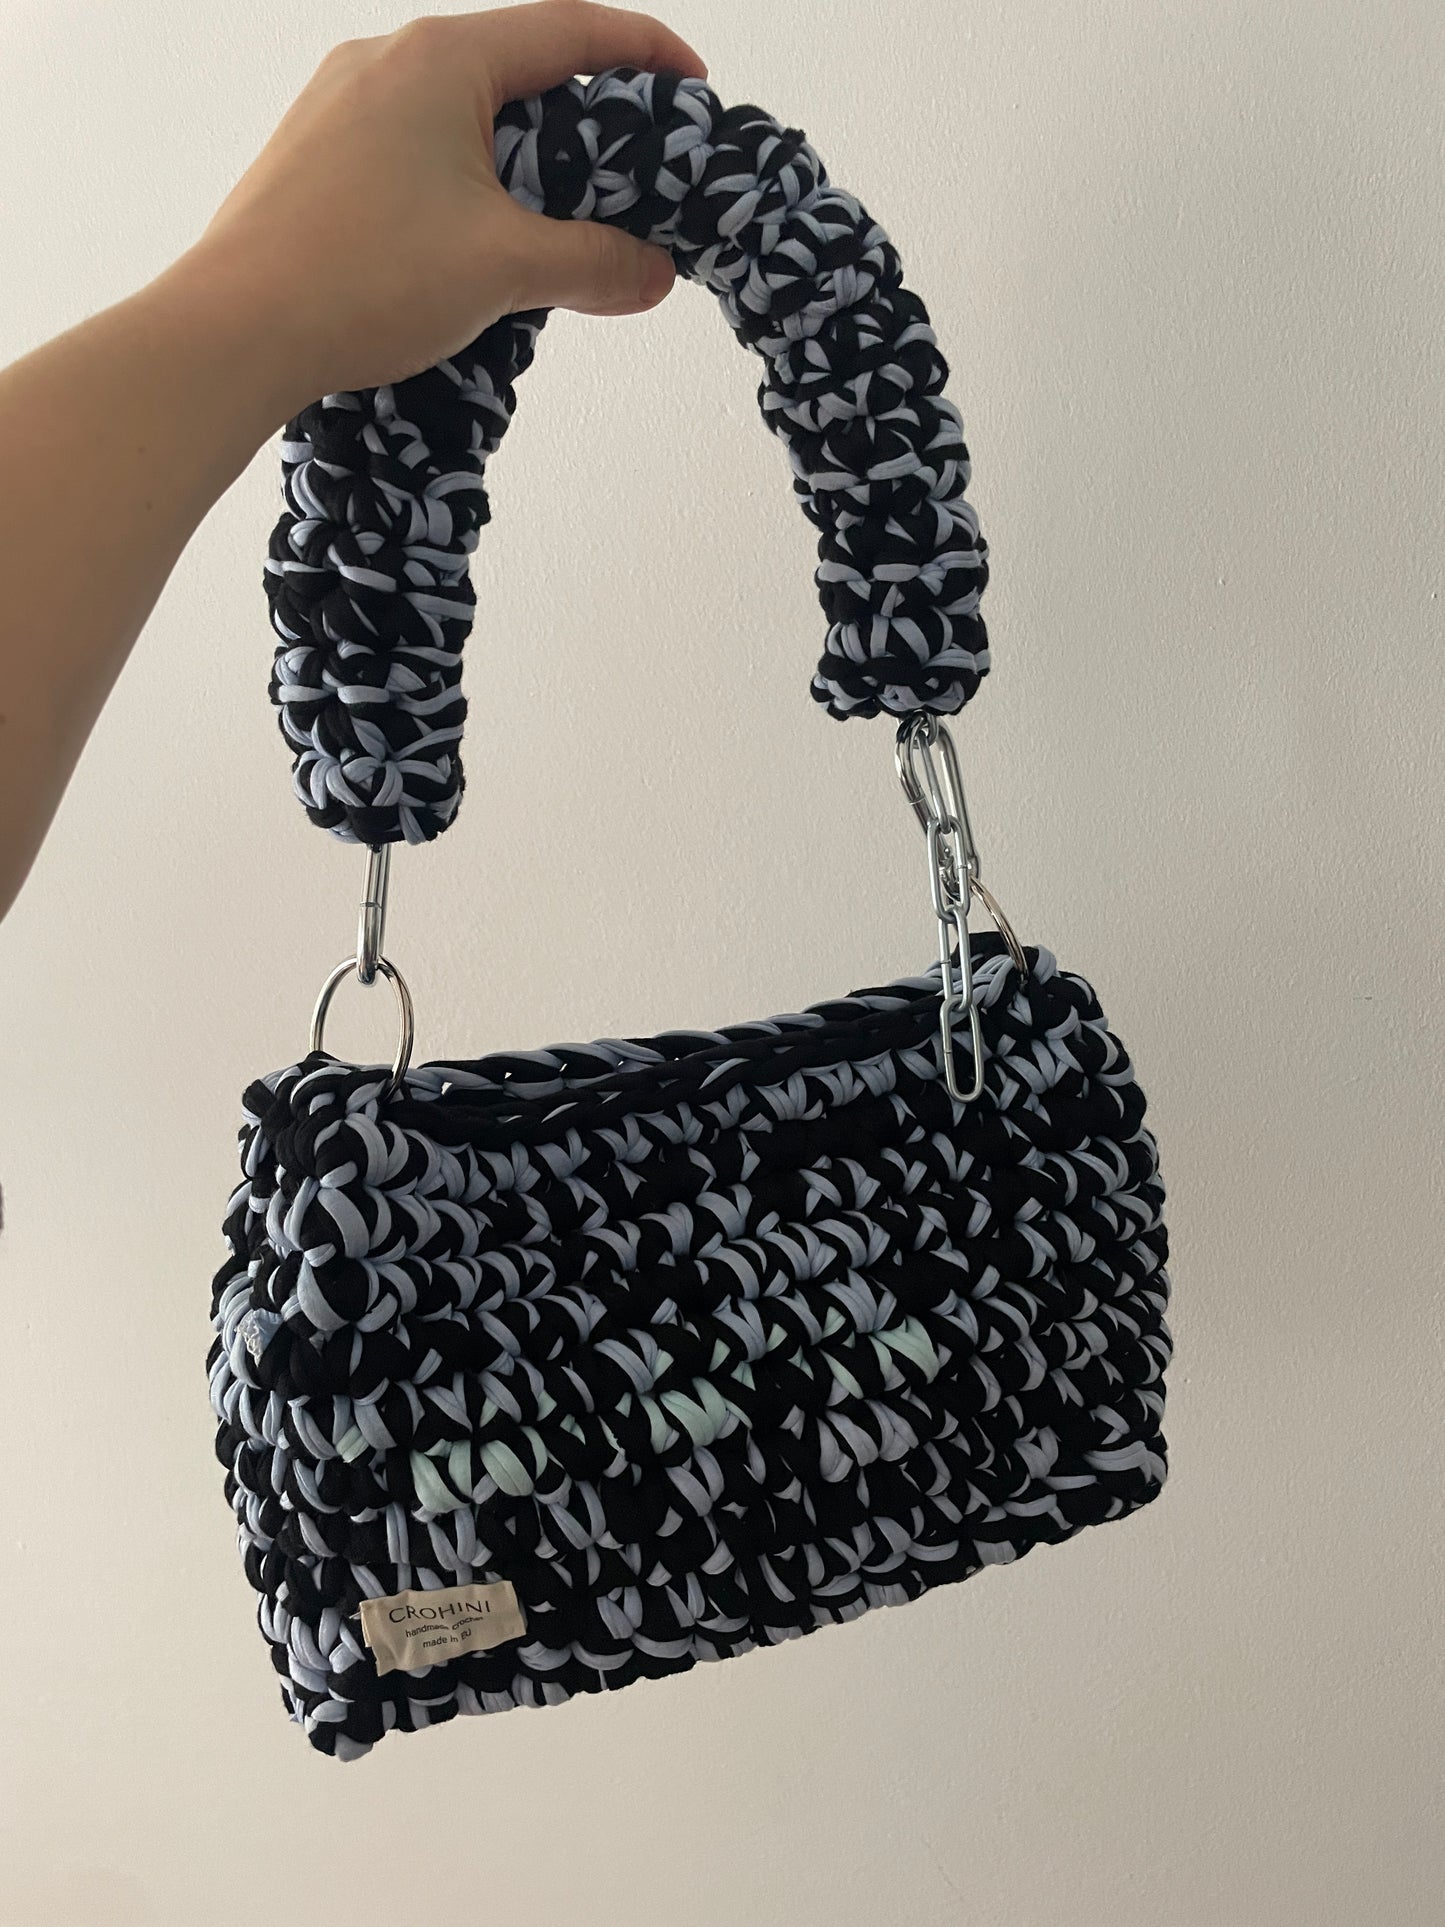 Medium Black and Light Blue Crochet Bag - Medium Crohini JOE Bag - Handmade